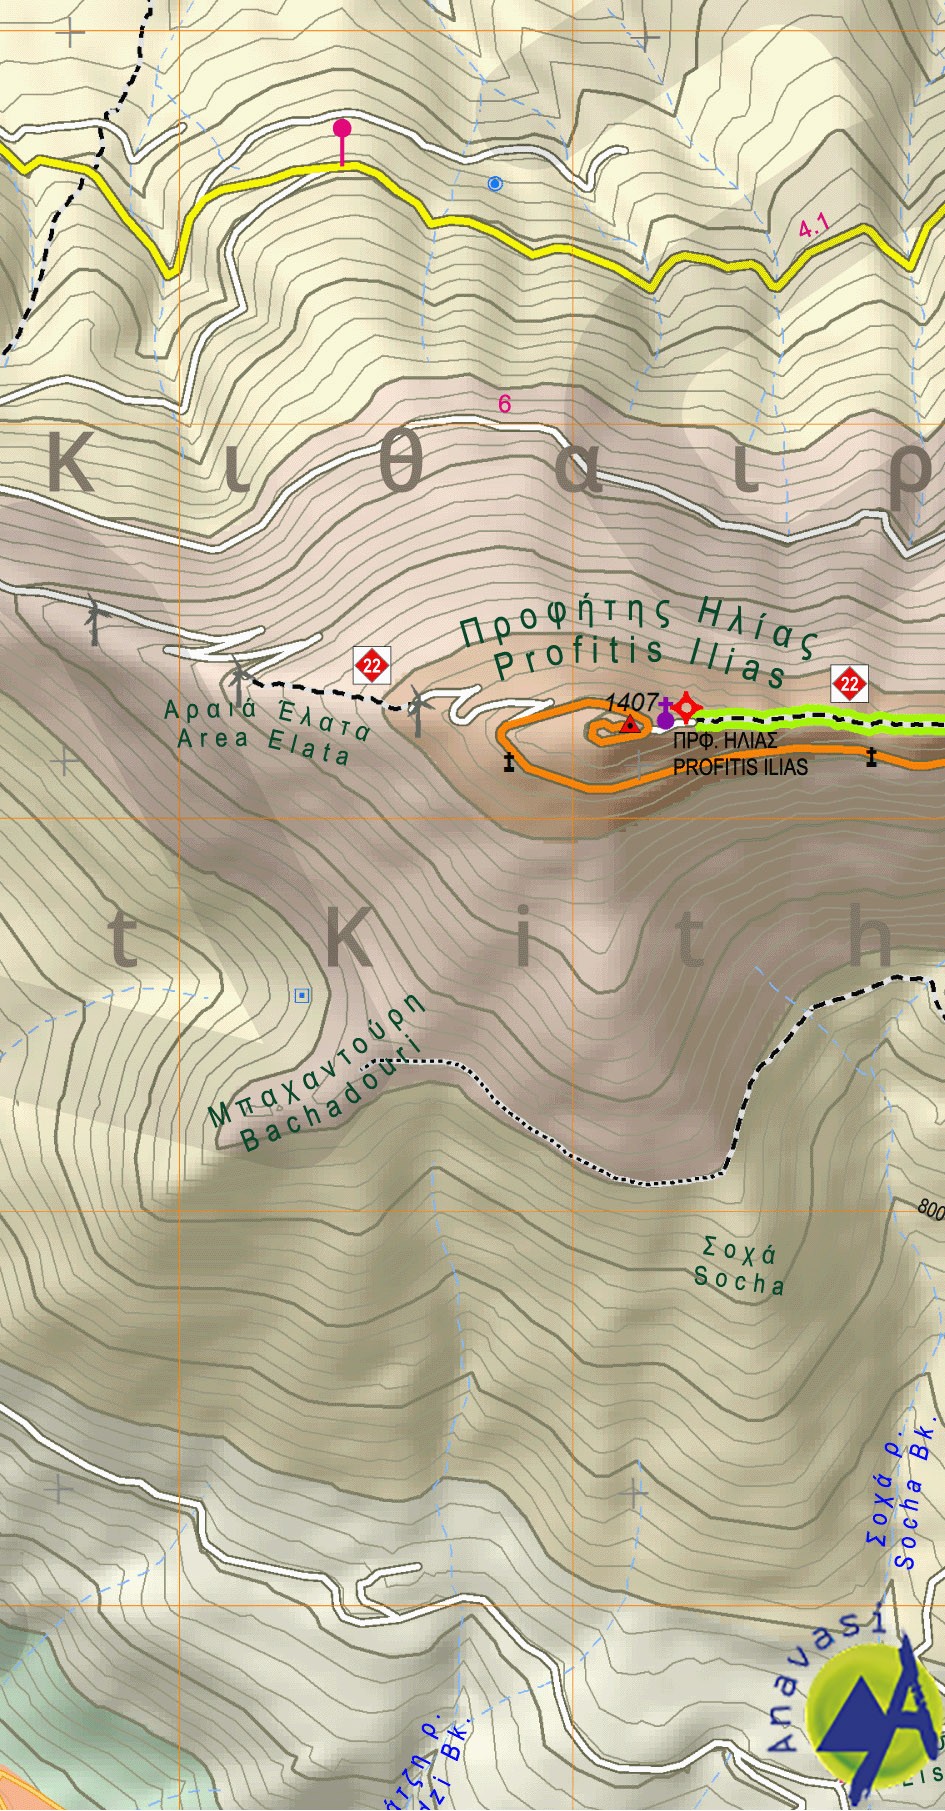 Kitheronas -  Pateras - Gerania • Hiking map 1:25.000